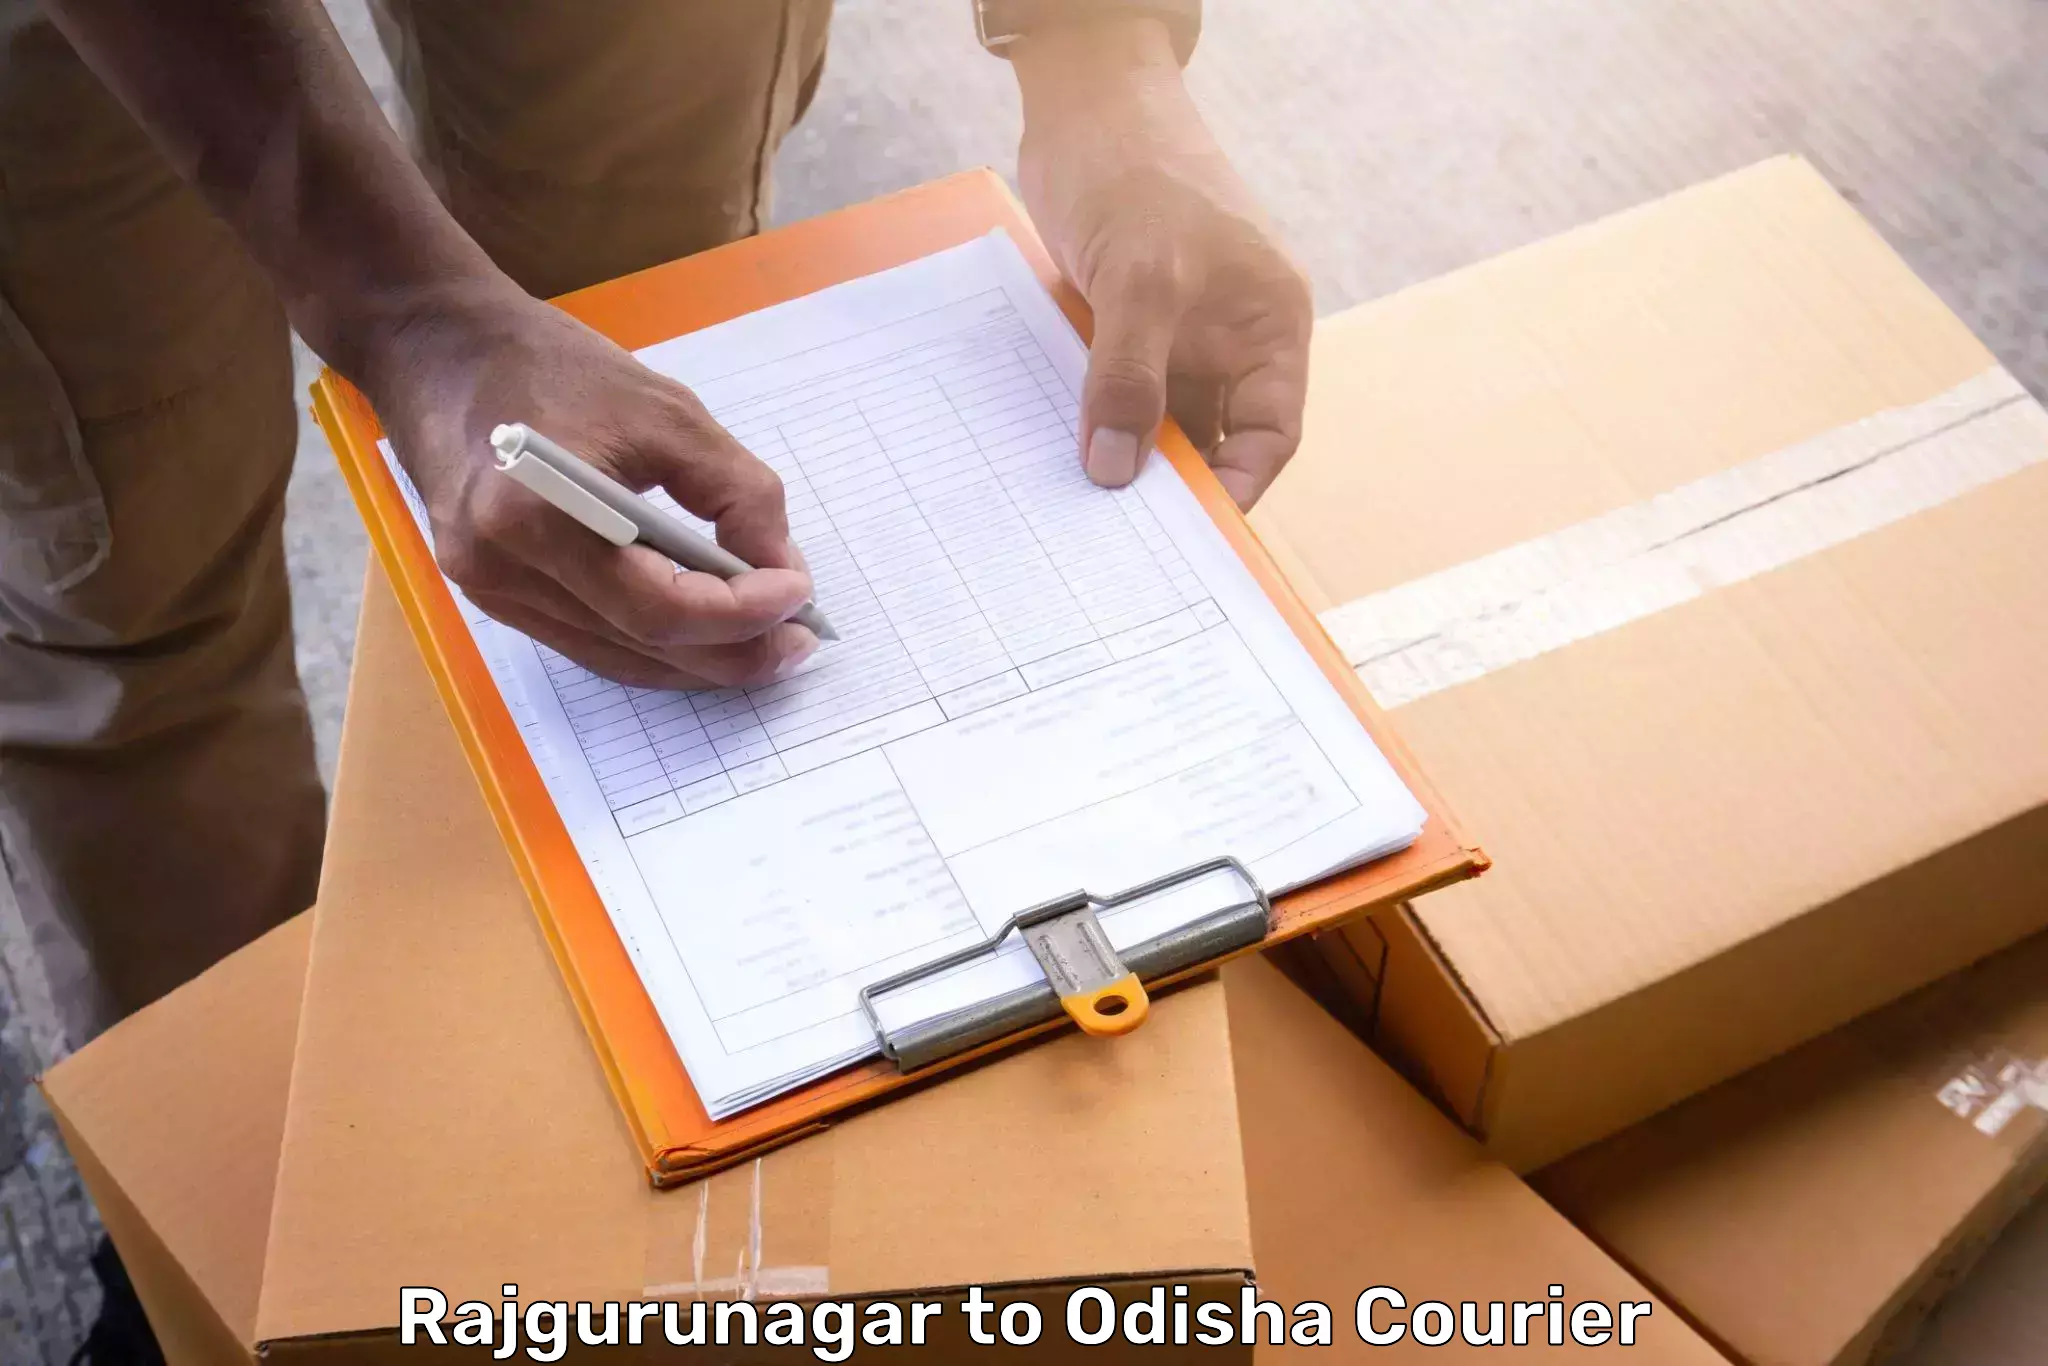 Baggage relocation service Rajgurunagar to Kishorenagar